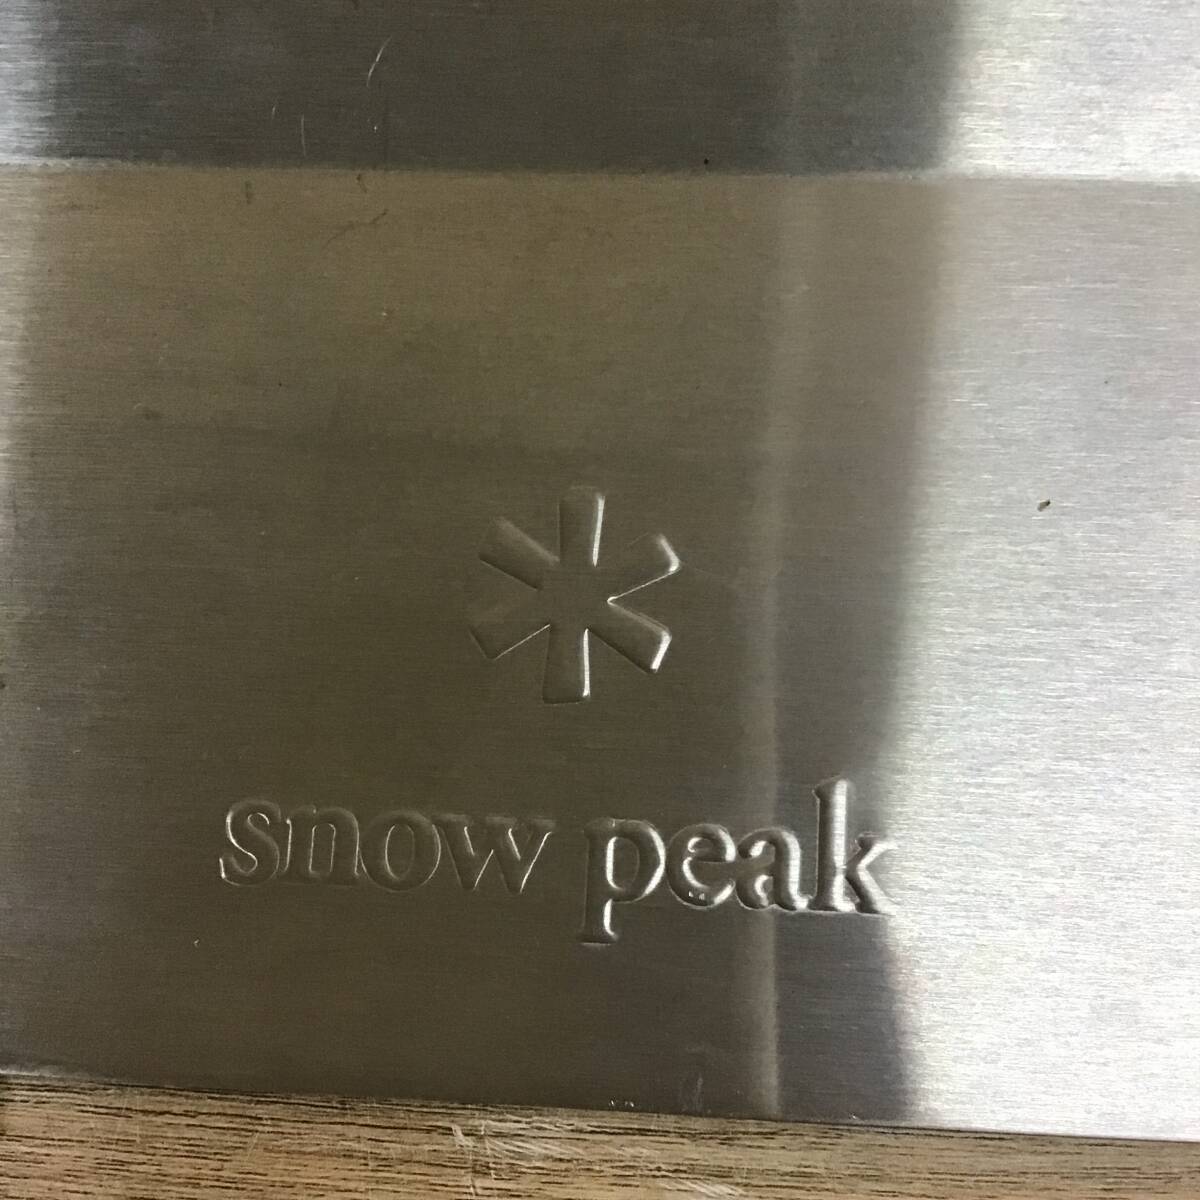 スノーピーク IGT ウインドスクリーン セット CK-141 snowpeak アイアングリル テーブル 風防 キャンプ tmc02054952_画像4